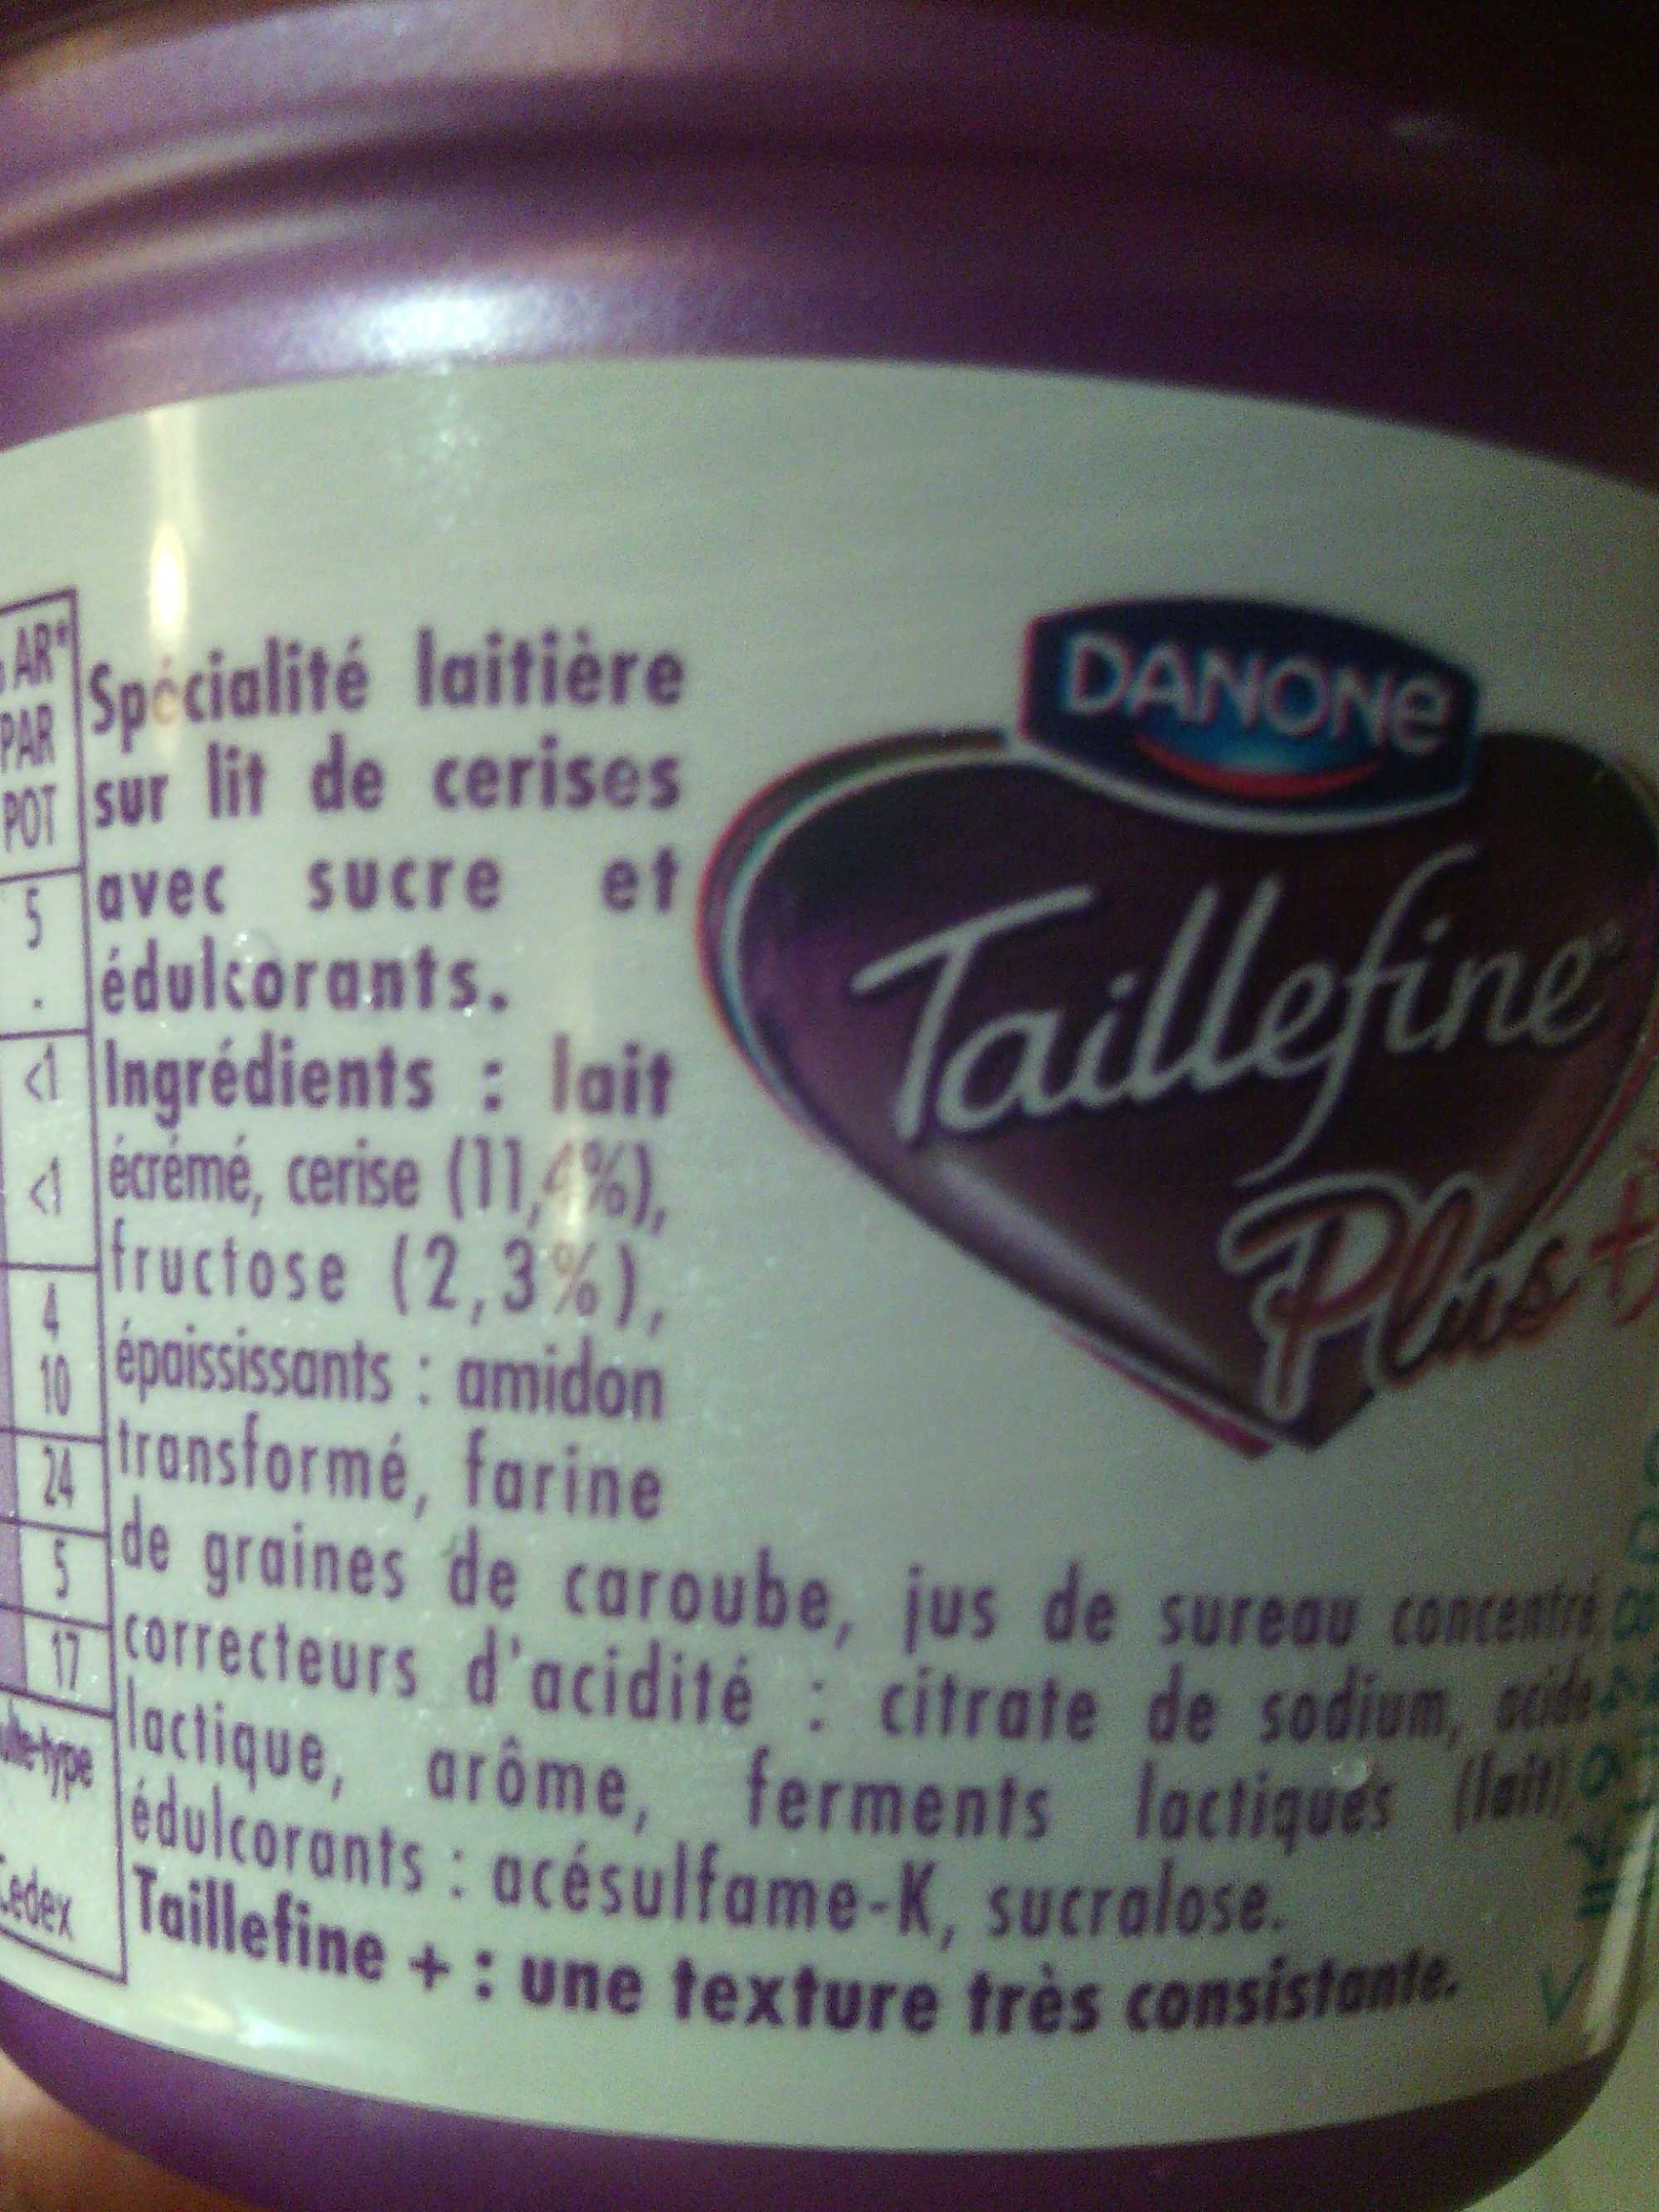 Taillefine Plus Cerise (0 % MG) - Ingrédients